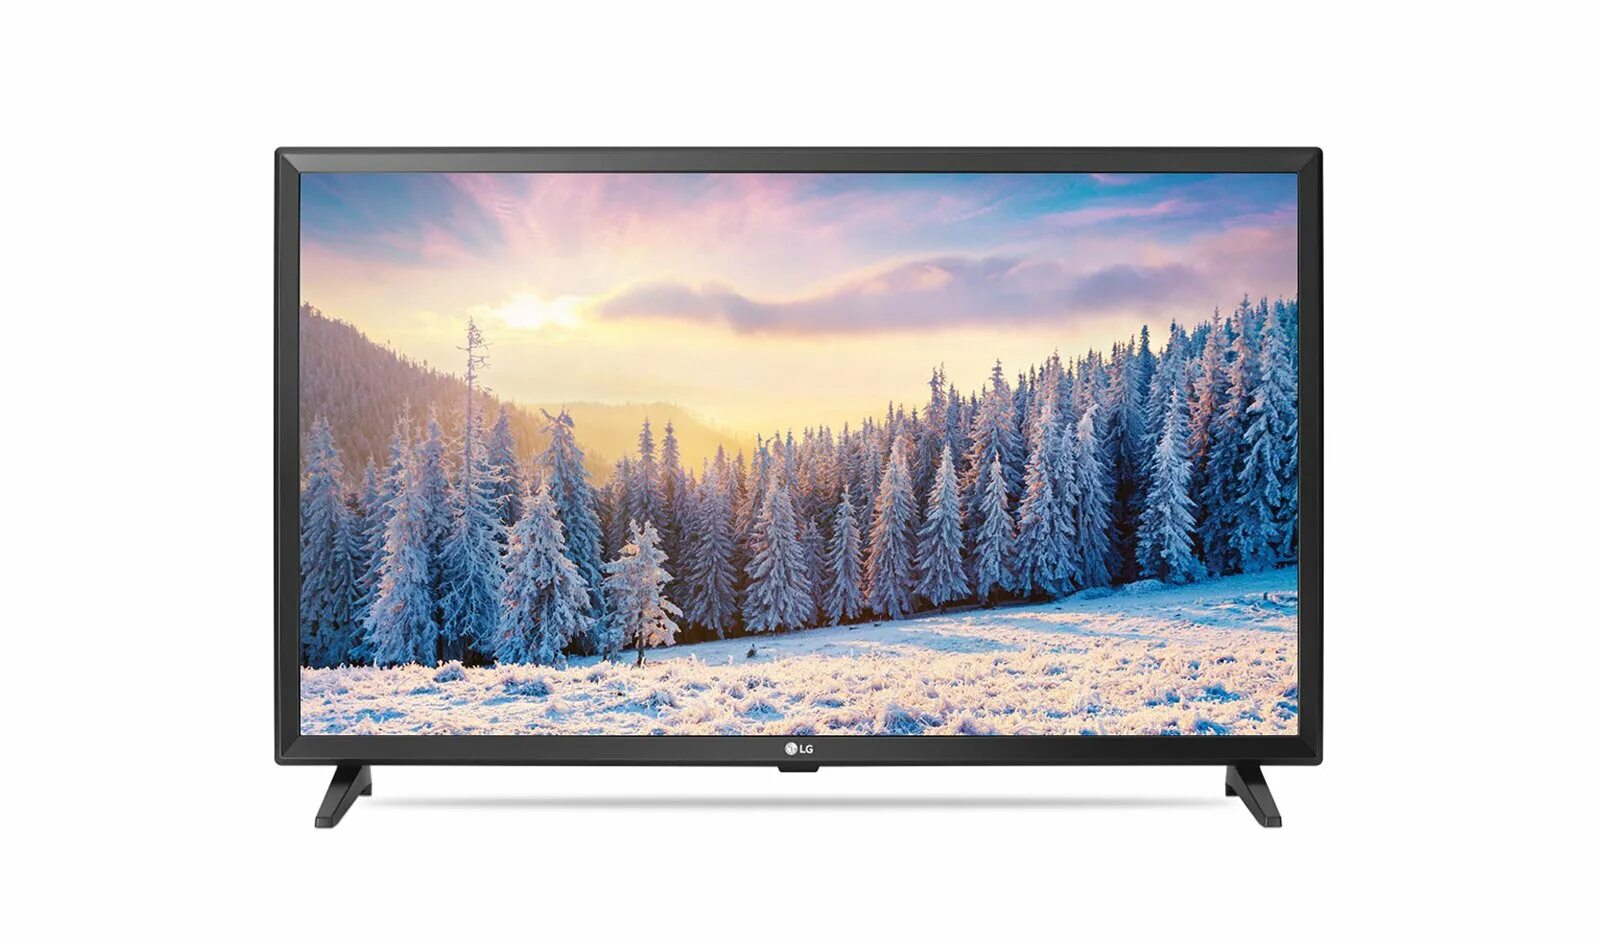 Куплю телевизор лджи 32 дюйма. LG 32lh519u. Led-телевизор LG 43lt340c. Телевизор LG 55lv340c 54.6" (2017). Телевизор LG 32lv4500 32".